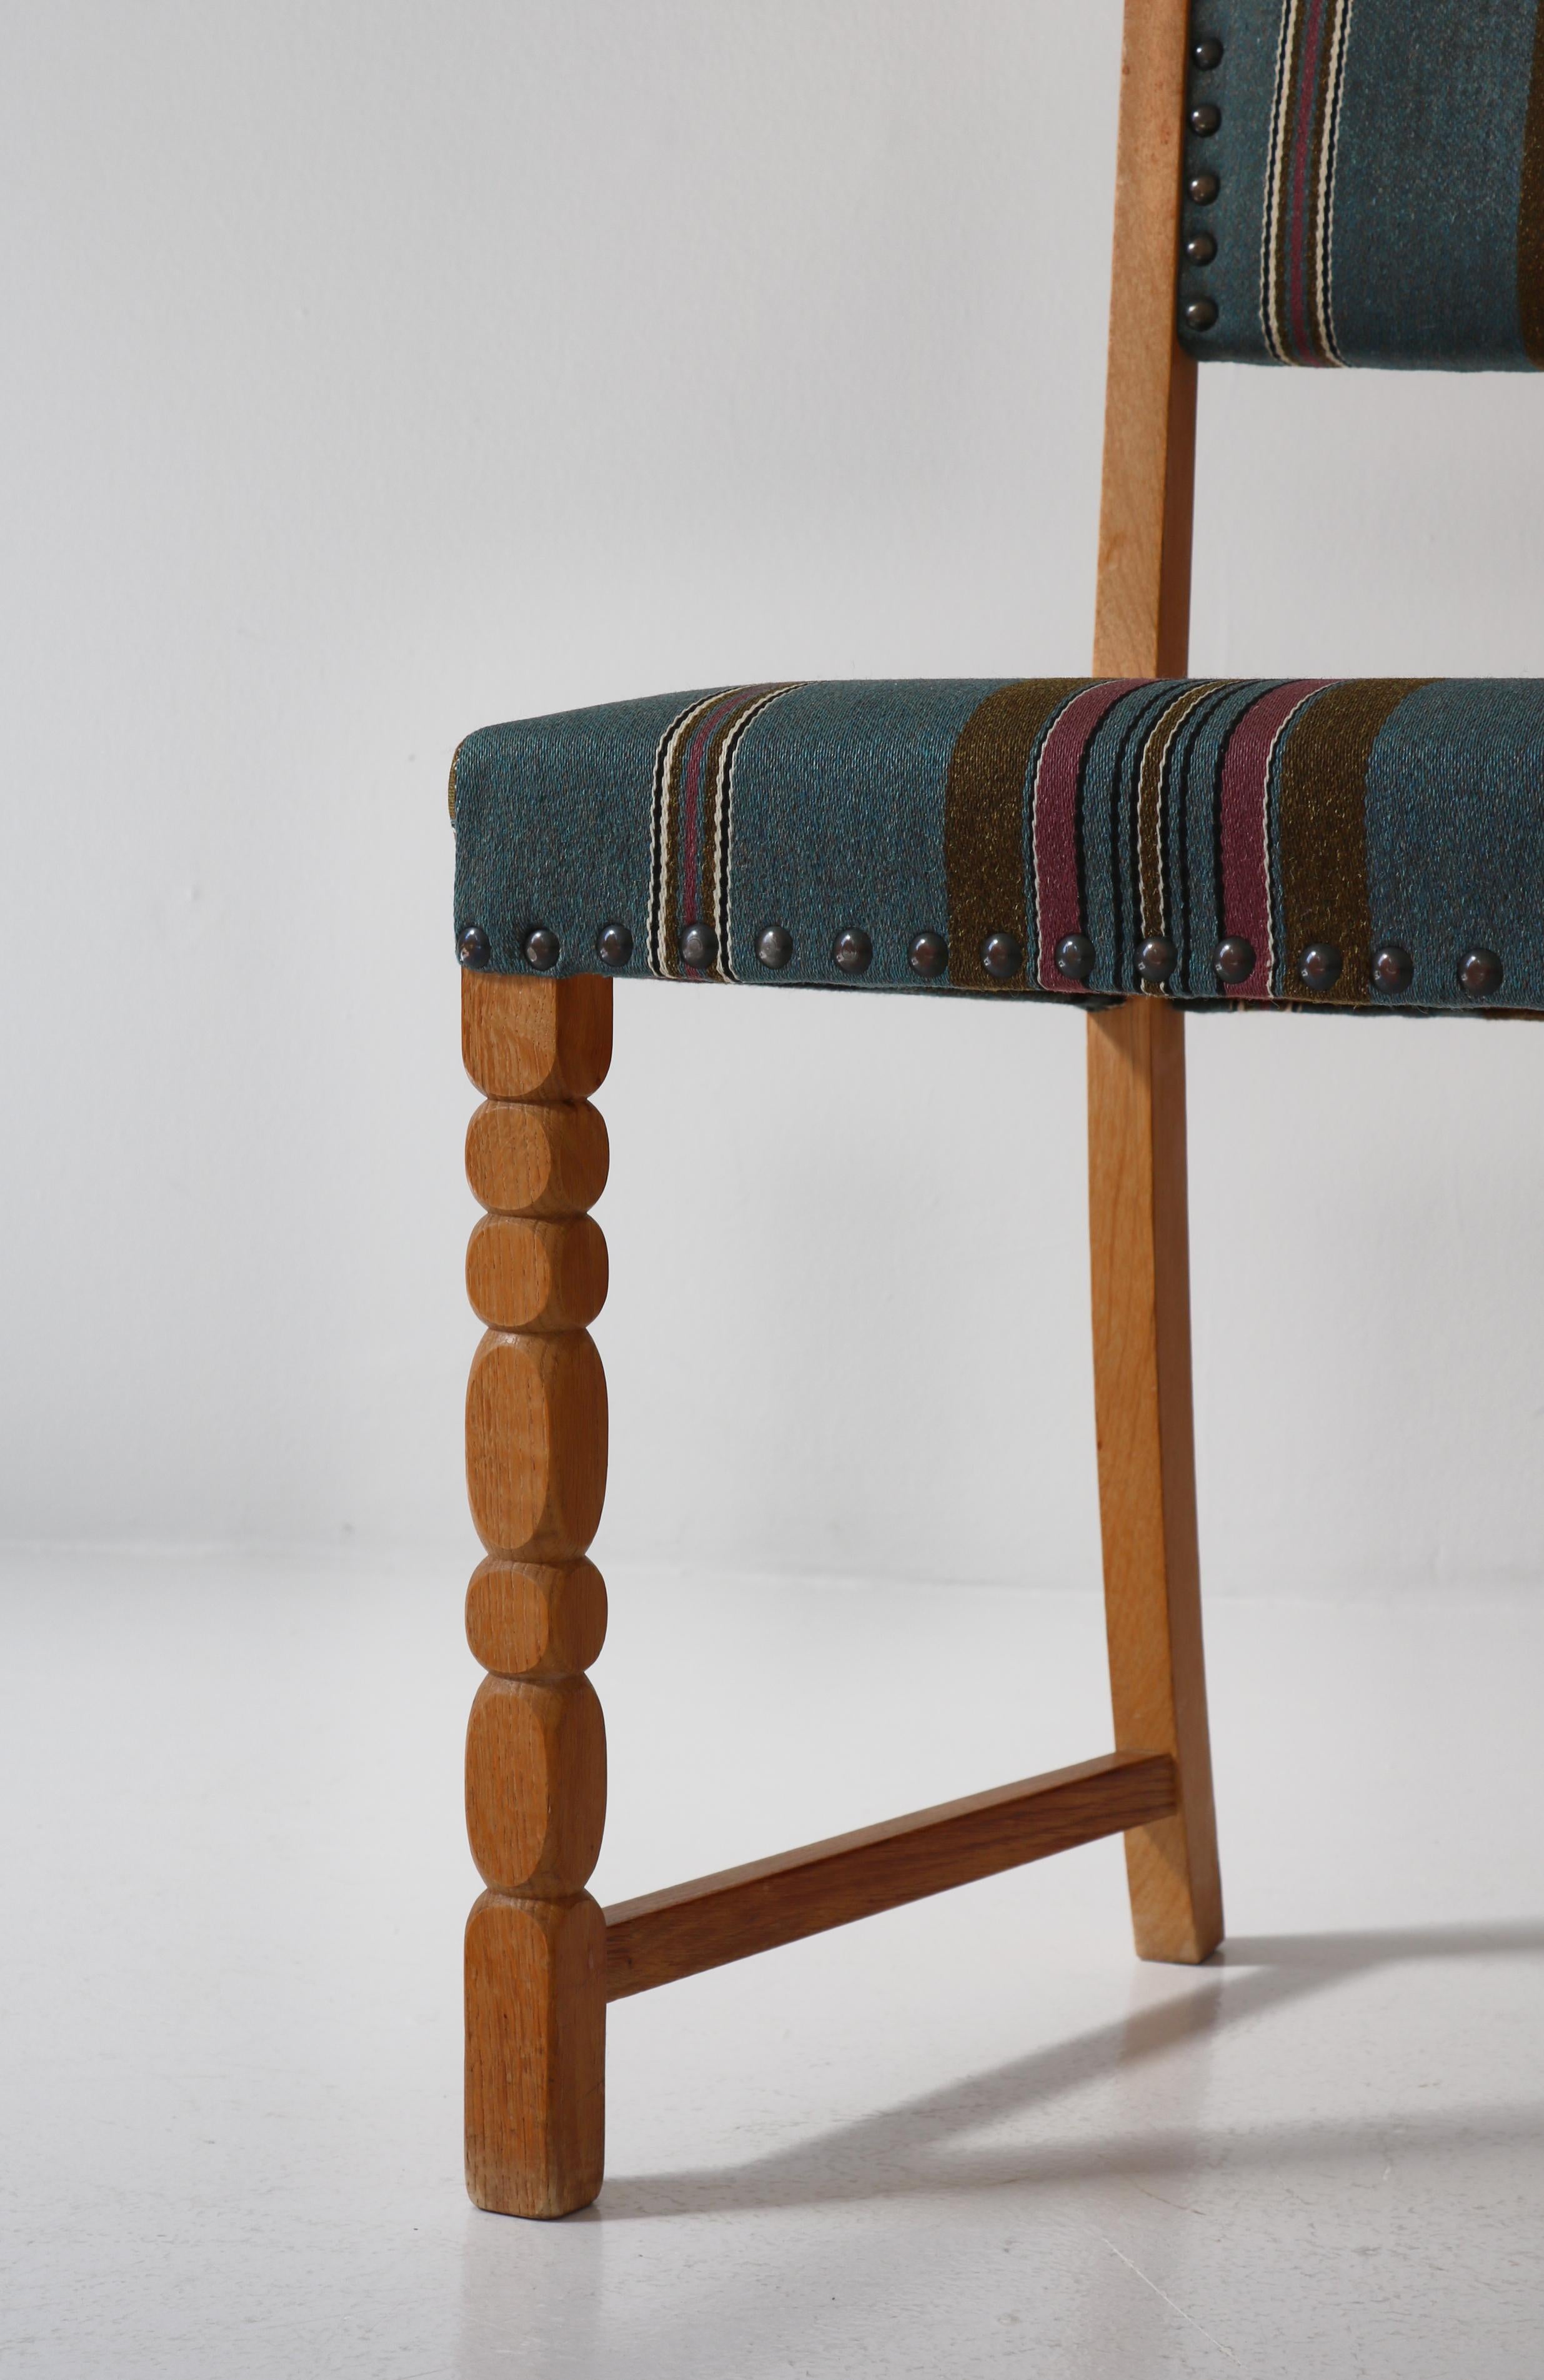 1960s Side Chair in Oak & Wool Fabric by Henry Kjærnulf, Danish Modern For Sale 1